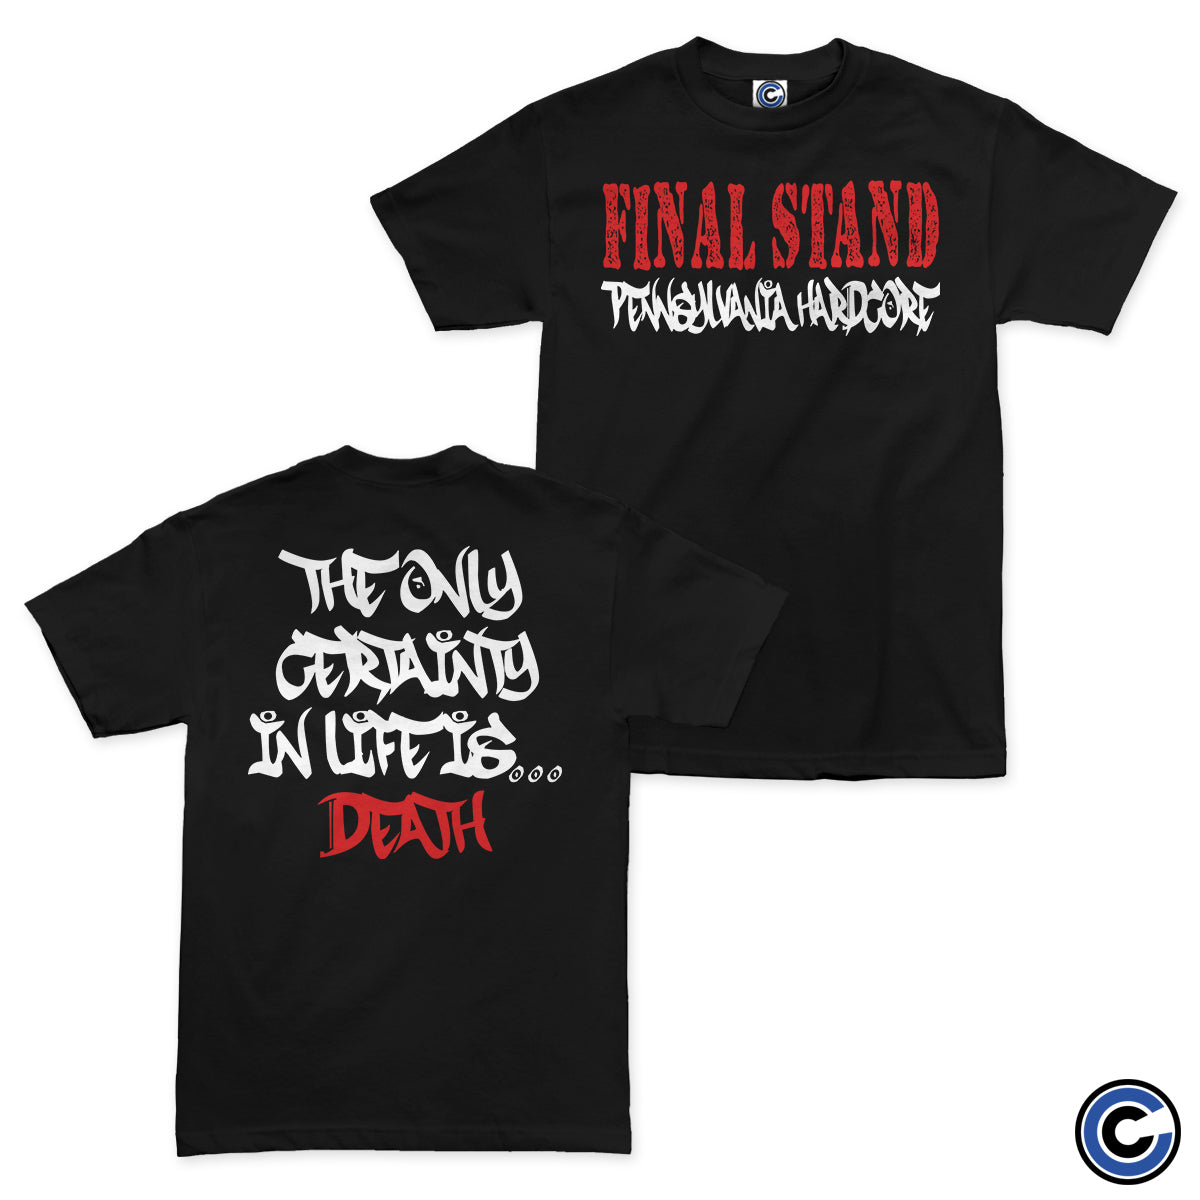 Final Stand "Logo" Shirt